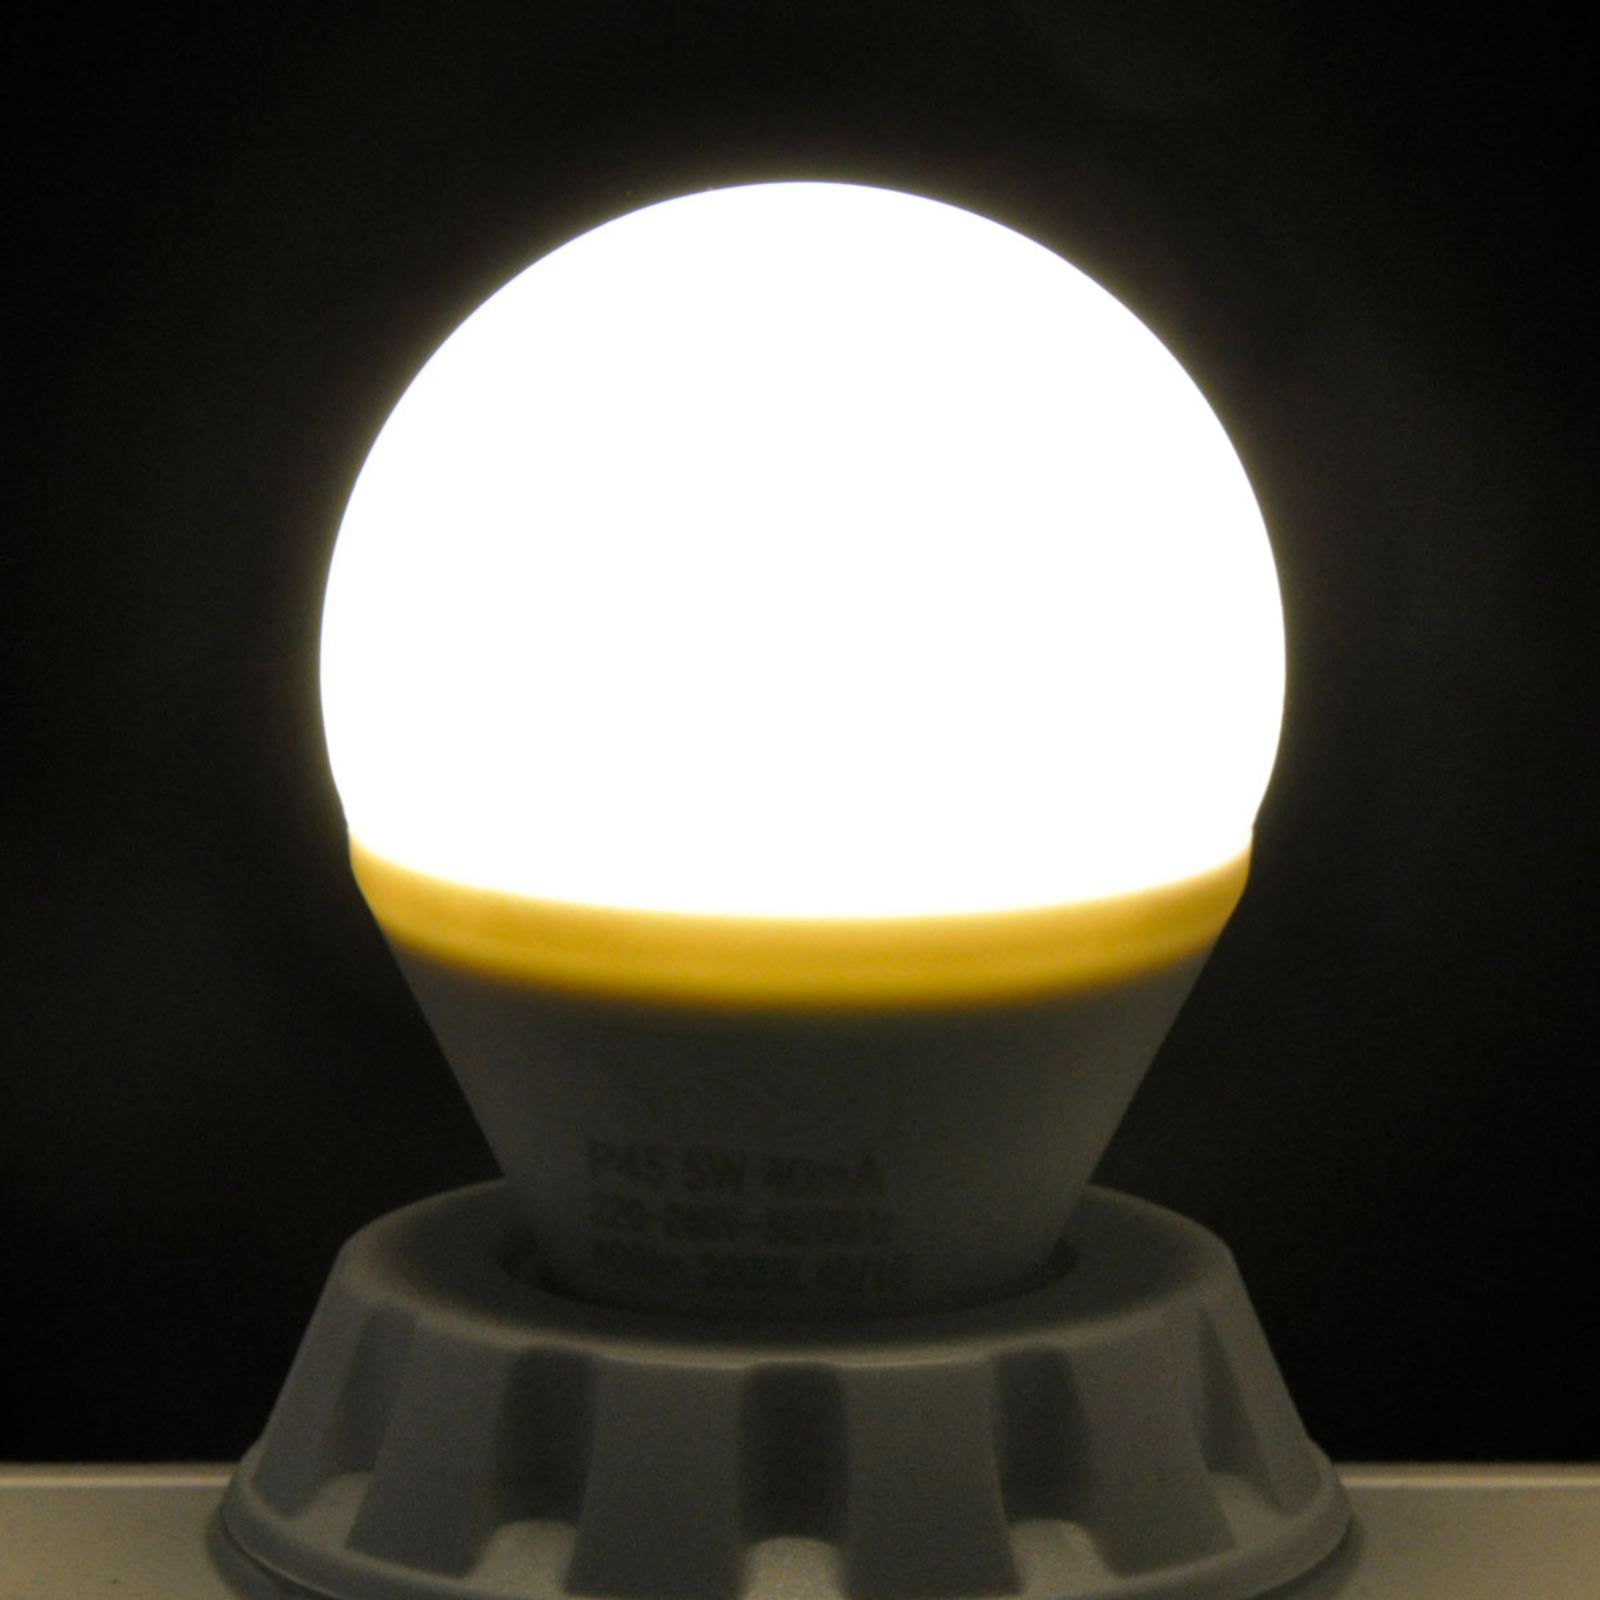 LED-Tropfenlampe E14 5W, warmweiß, easydim